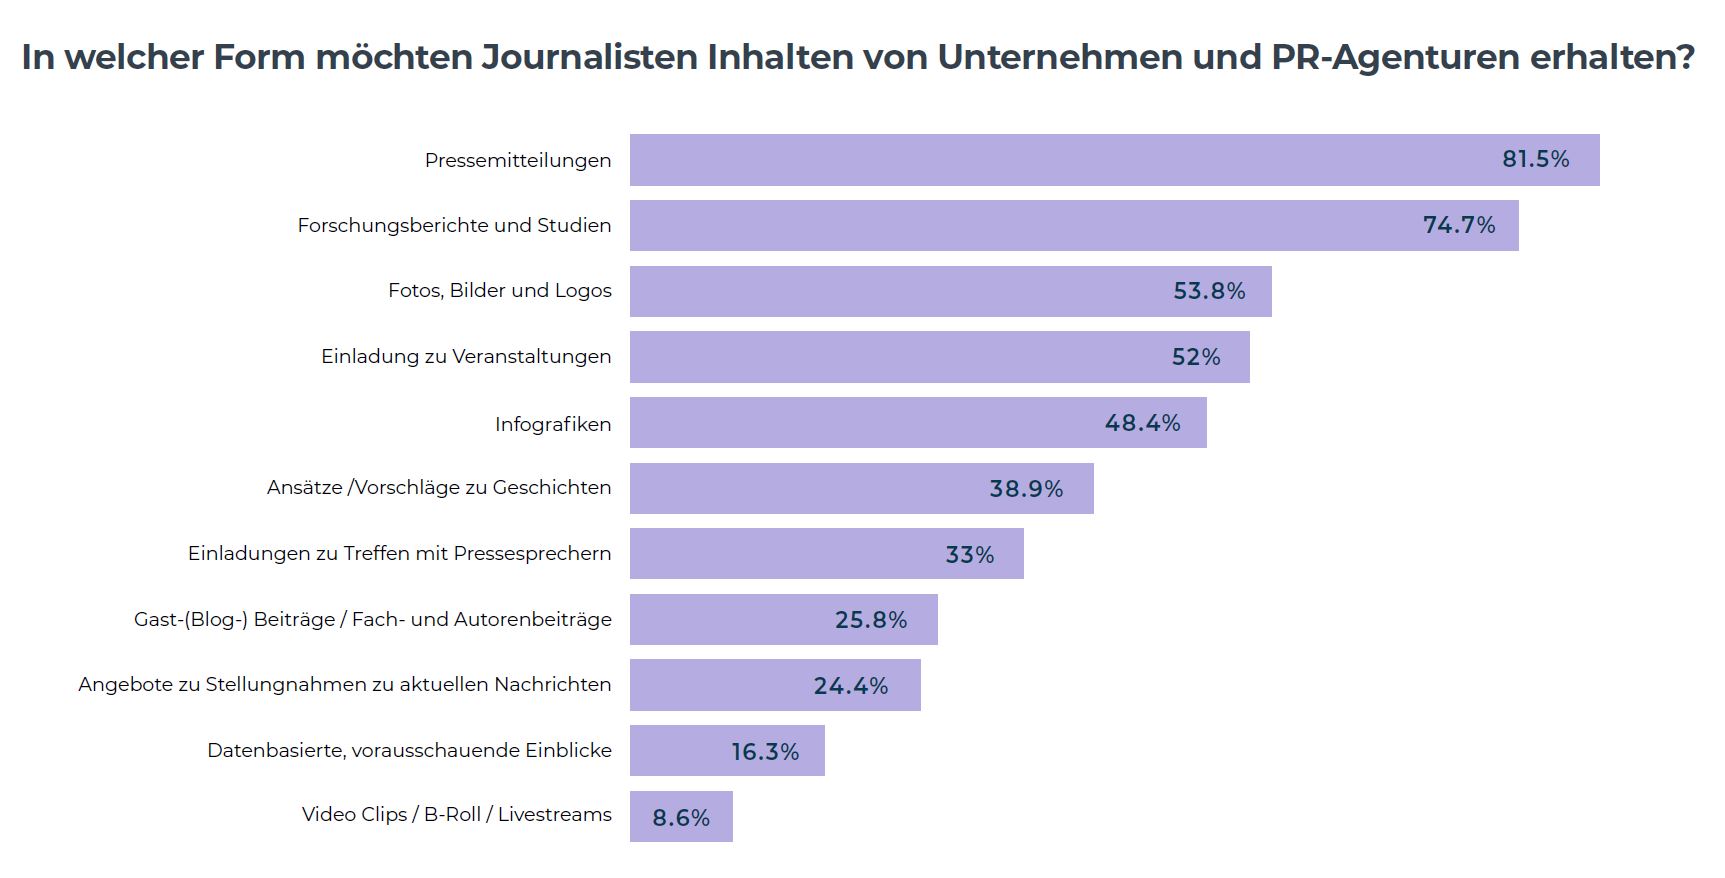 Grafik die zeigt, in welcher Form Journalisten Informationen erhalten möchten